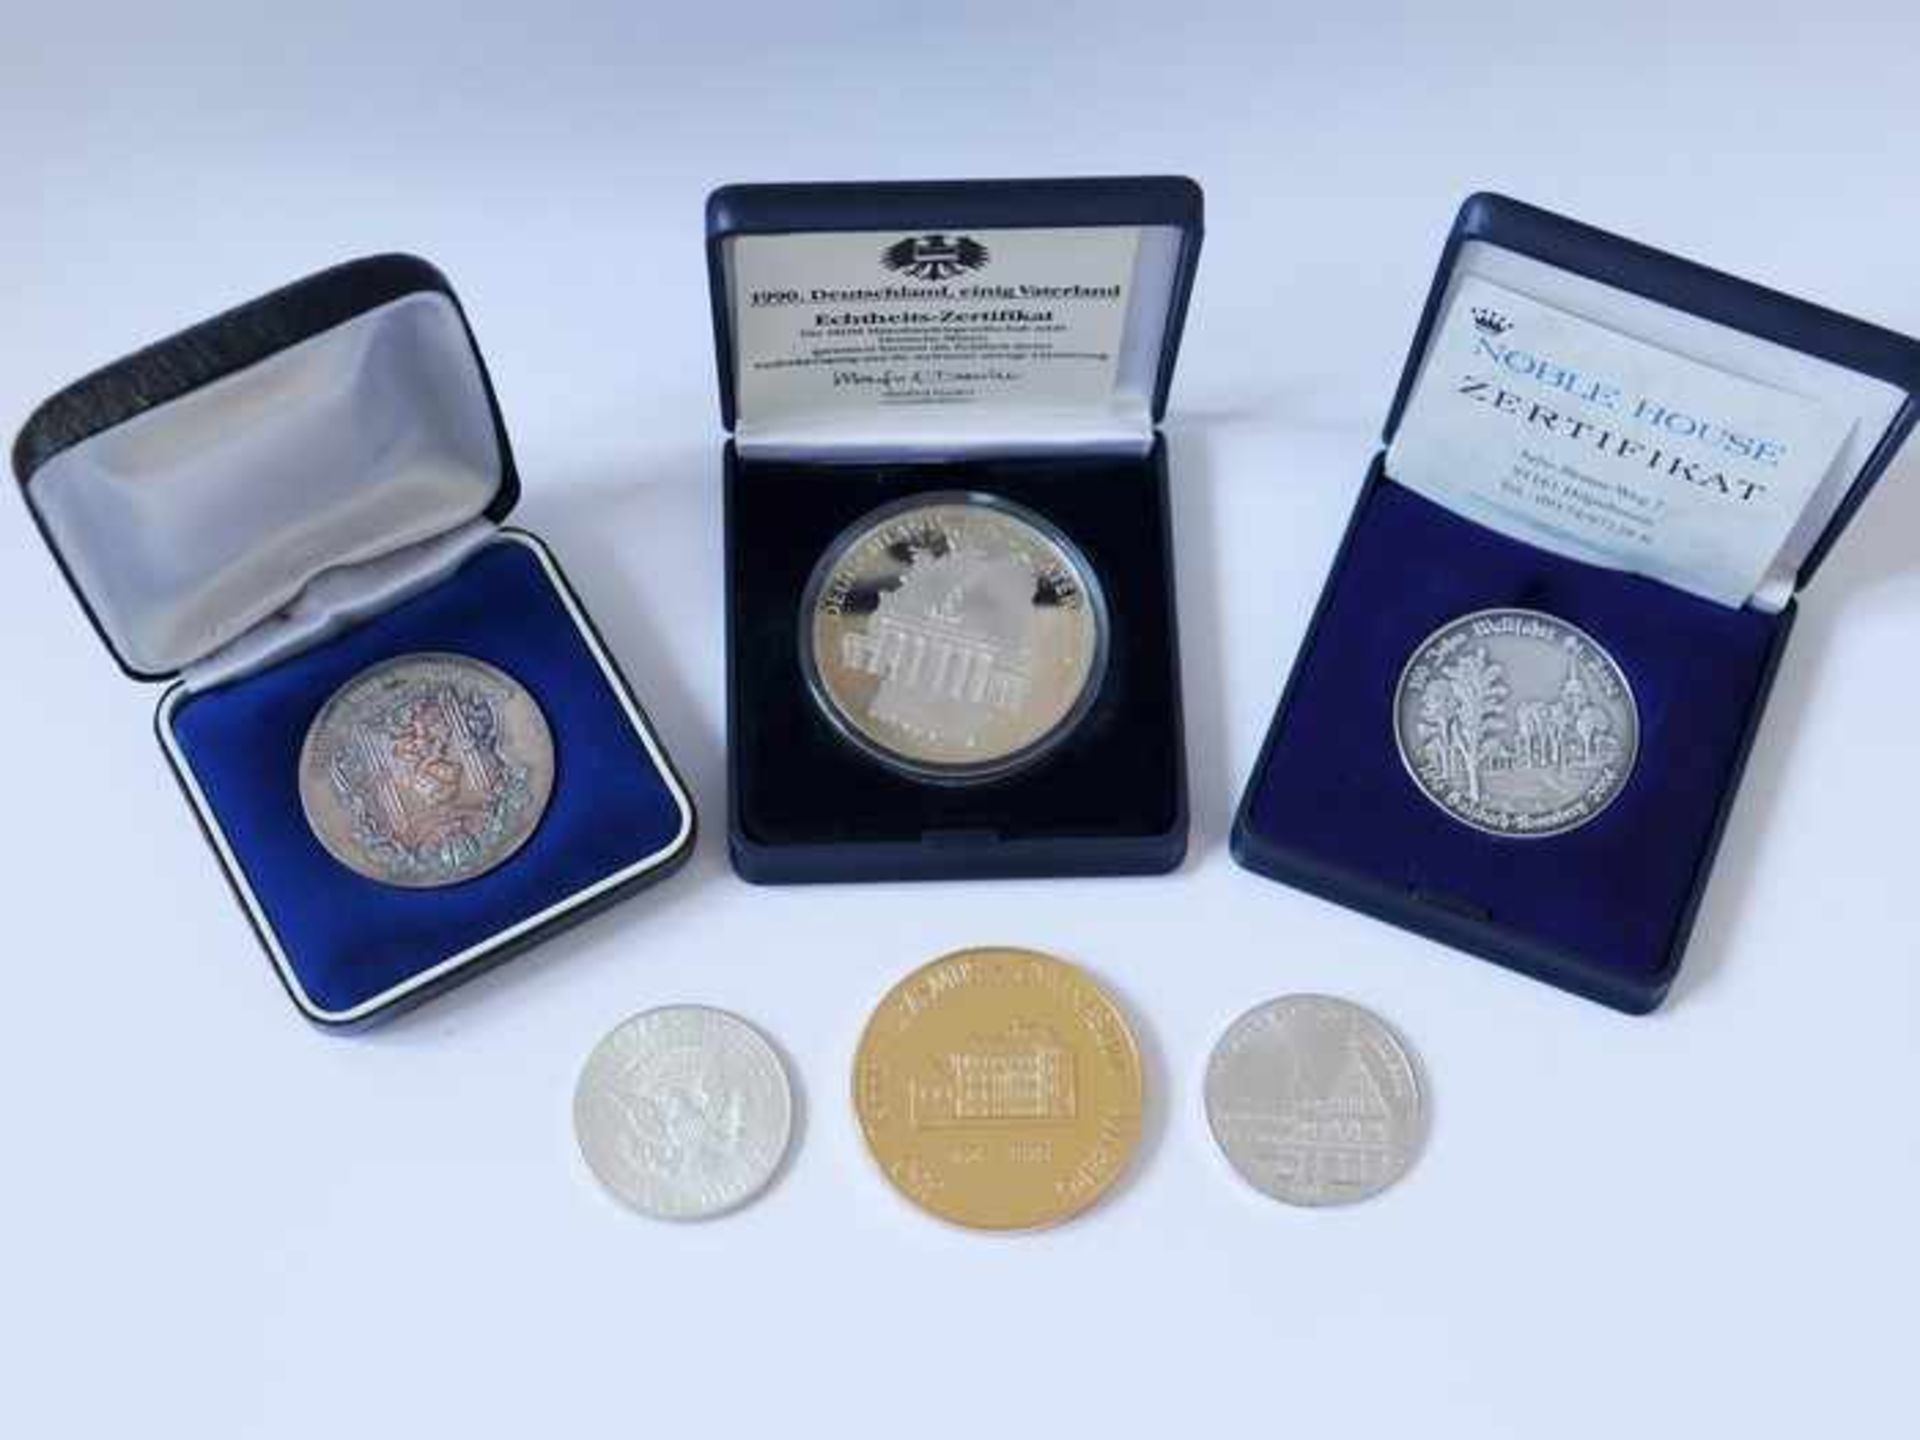 Medaillen/Münzen6 St., dabei 2 x Si 990, 1 x Deutschland Einig Vaterland 1990, in Münzkapsel, Dollar - Bild 2 aus 2